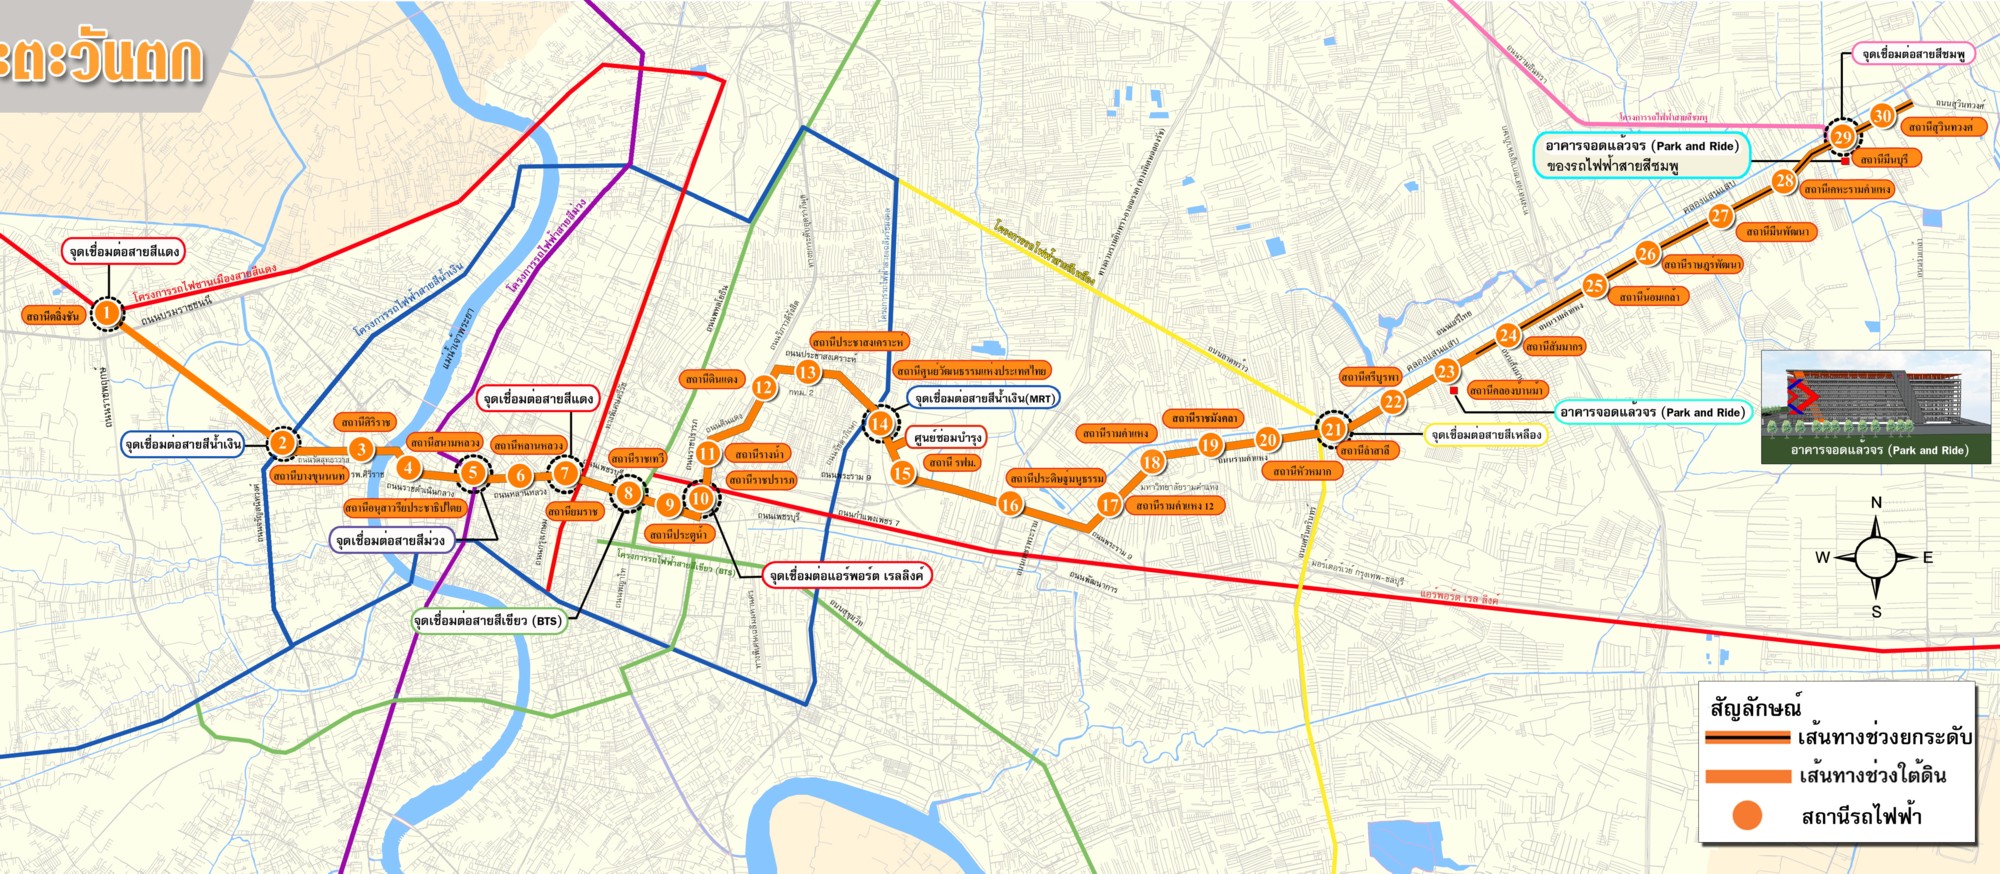 Bangkok metro orange line